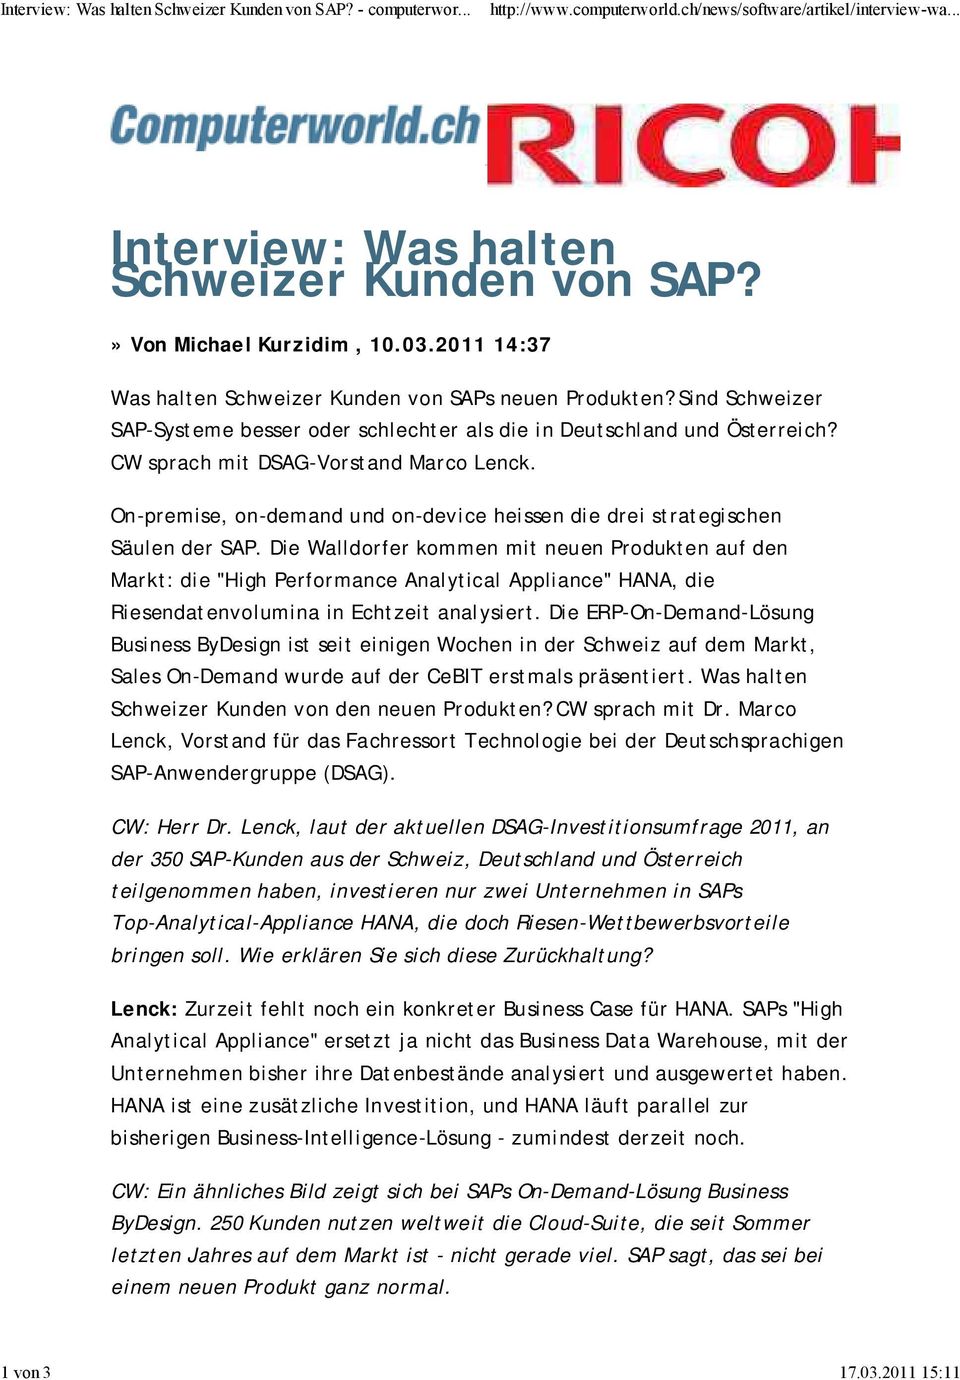 CW sprach mit DSAG-Vorstand Marco Lenck. On-premise, on-demand und on-device heissen die drei strategischen Säulen der SAP.